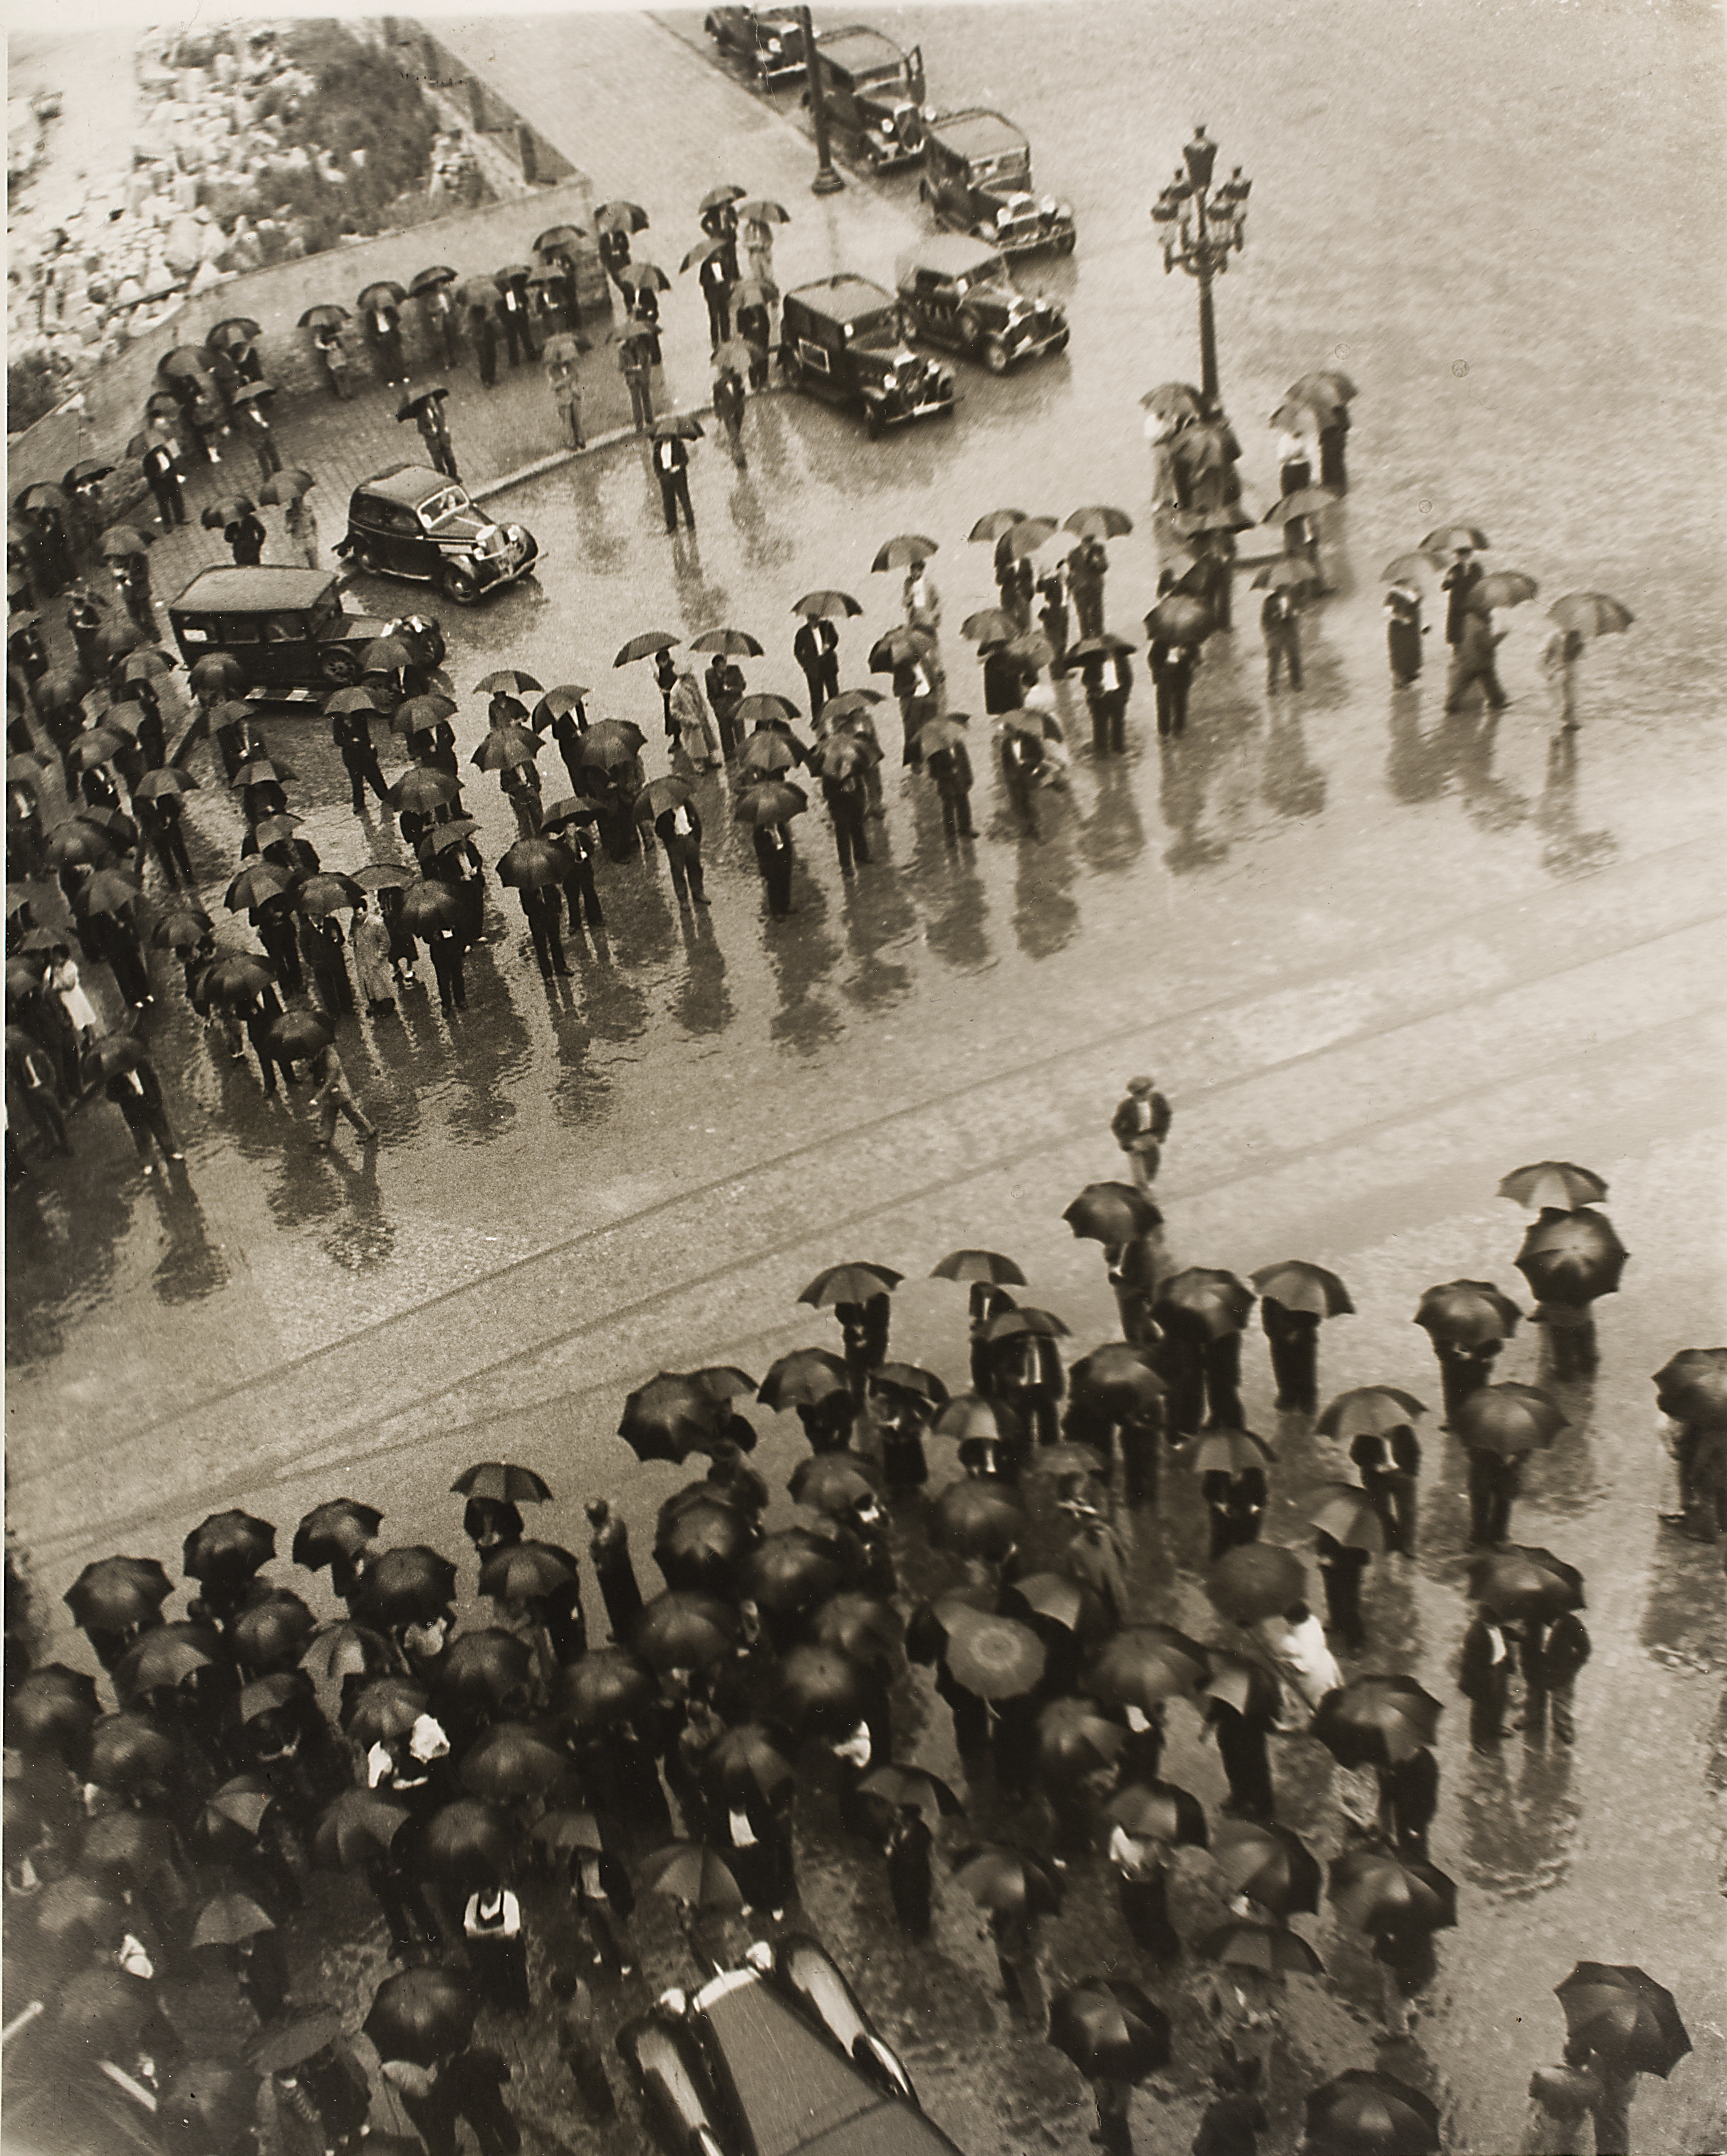 Los Paraguas, mitin de la CNT [Umbrellas, Meeting of the CNT], Spanish Civil War, Barcelona, 1937